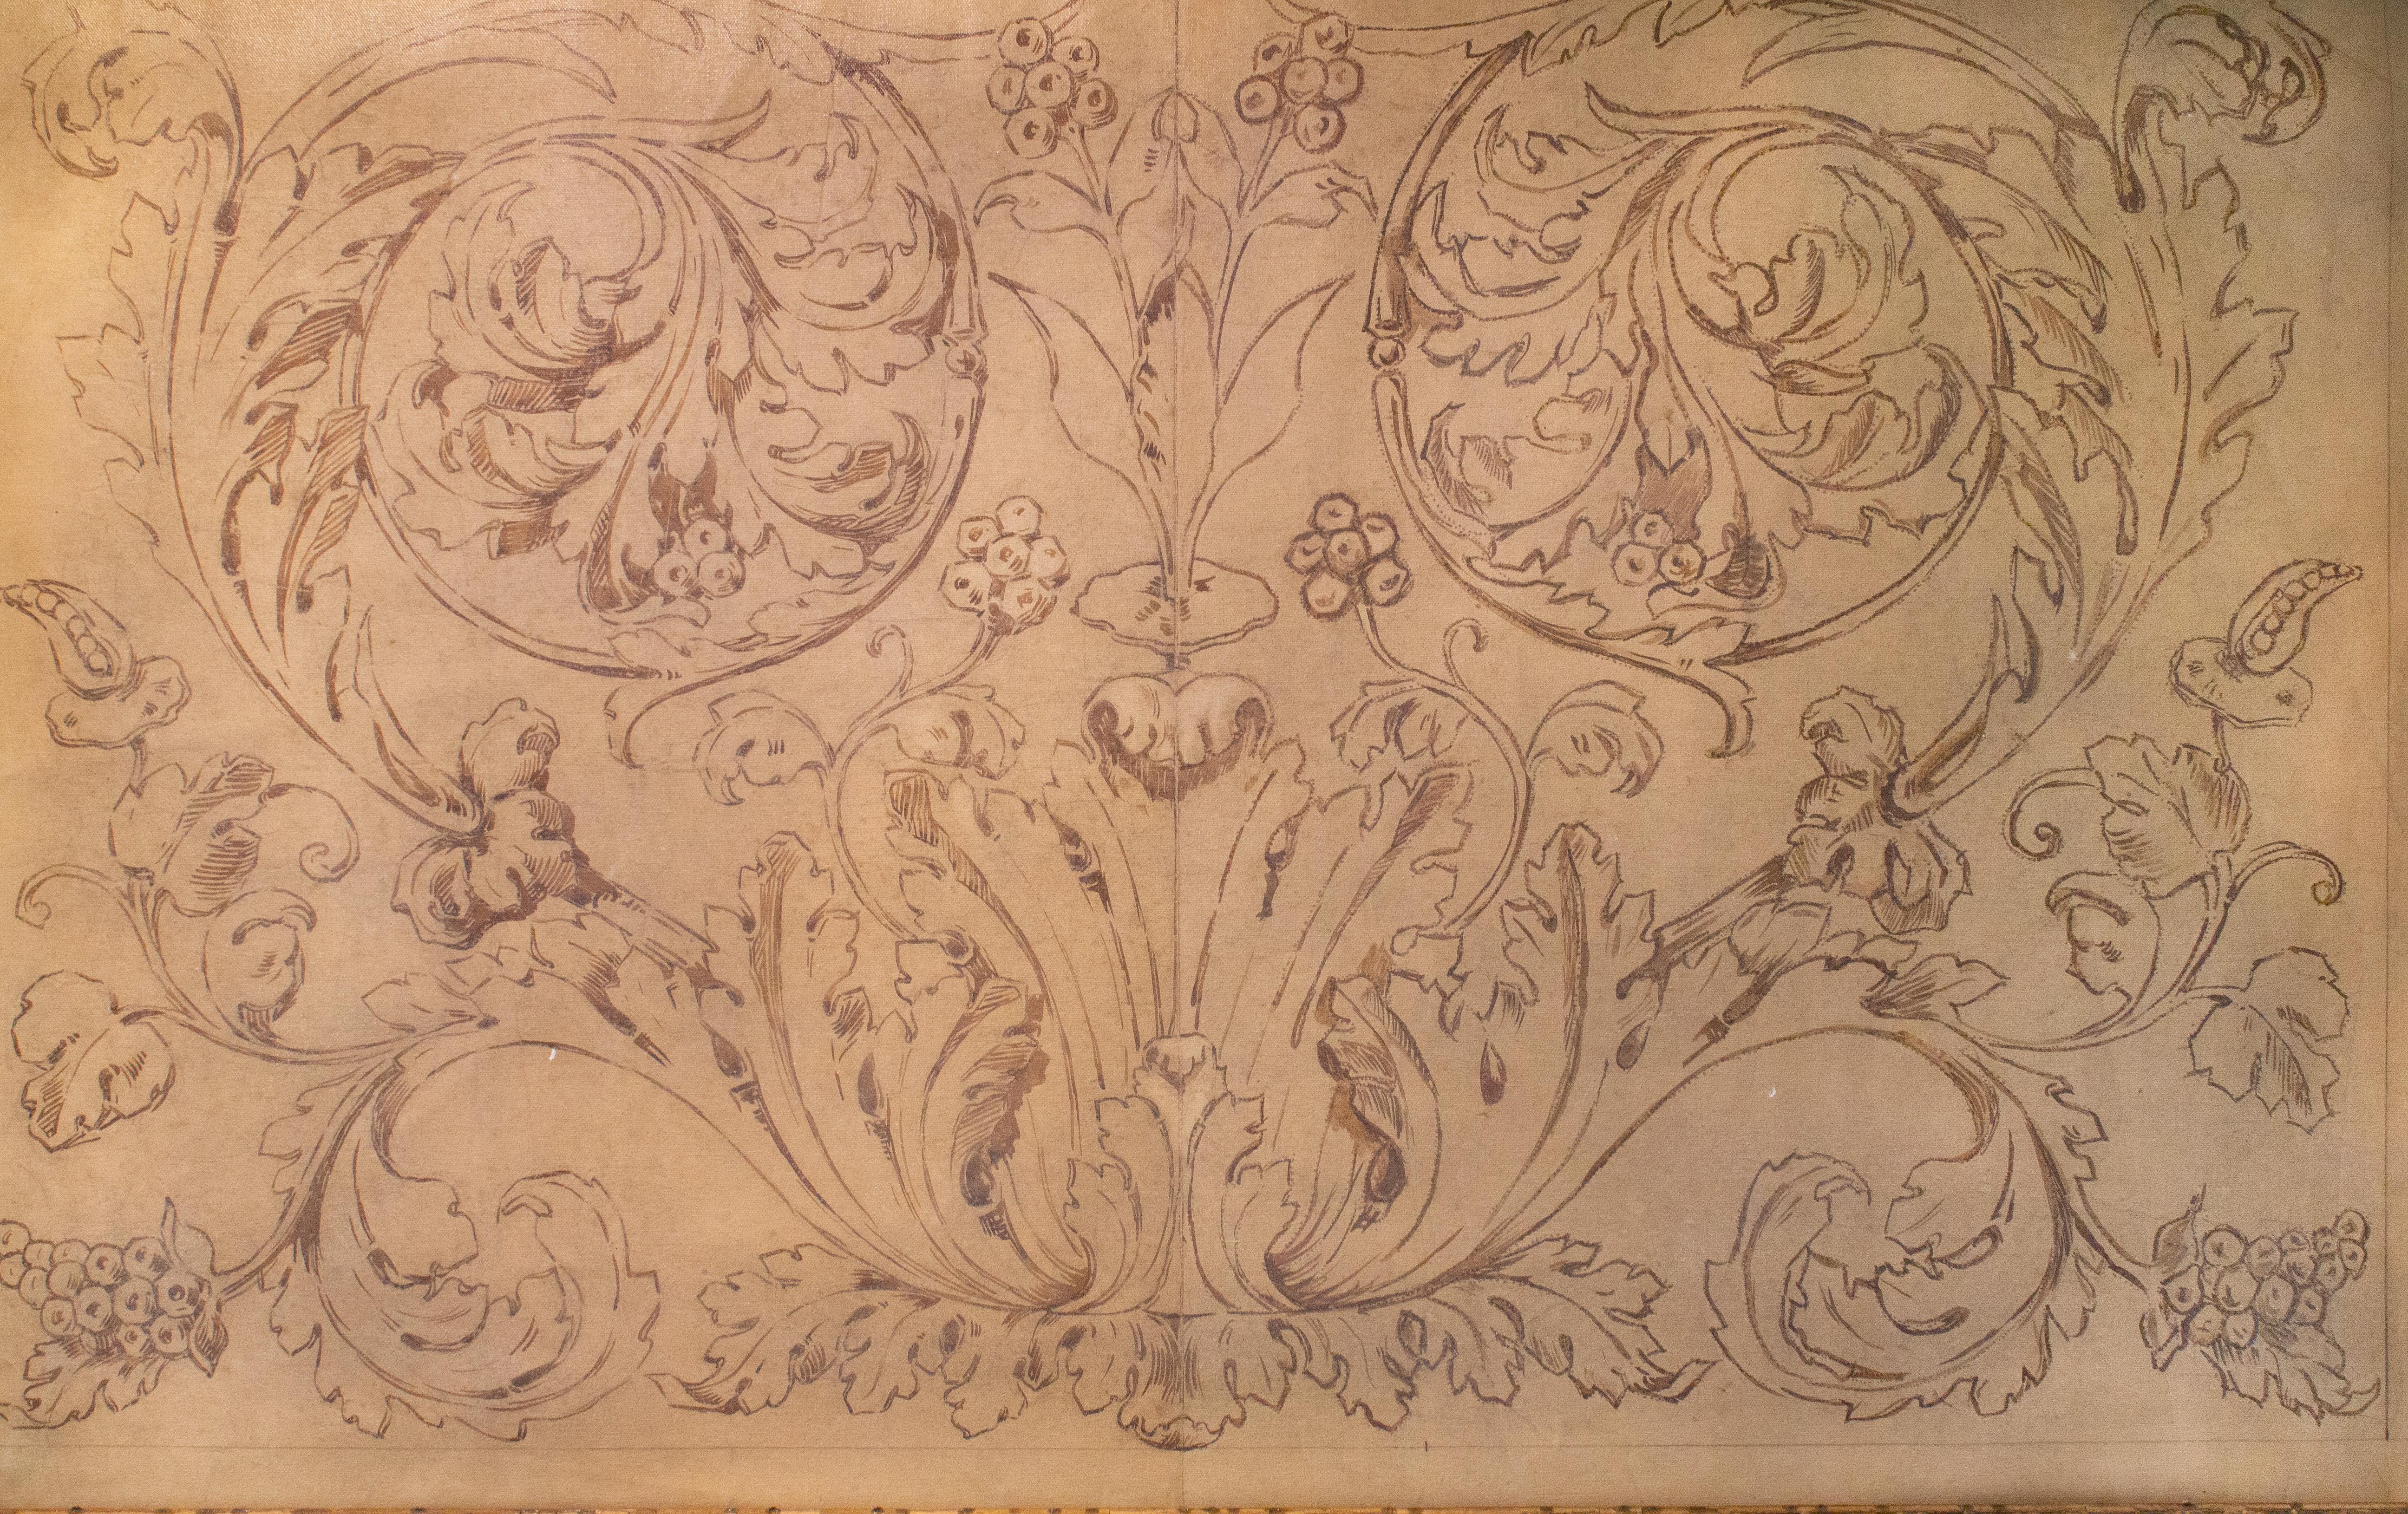 Motif de fresque spolvero italienne du XVIIIe siècle imprimé sur toile et encadré dans un cadre en bois ancien.

Le Spolvero est une méthode artistique qui consiste à transférer un dessin d'une impression sur la surface préparée d'une toile, d'un